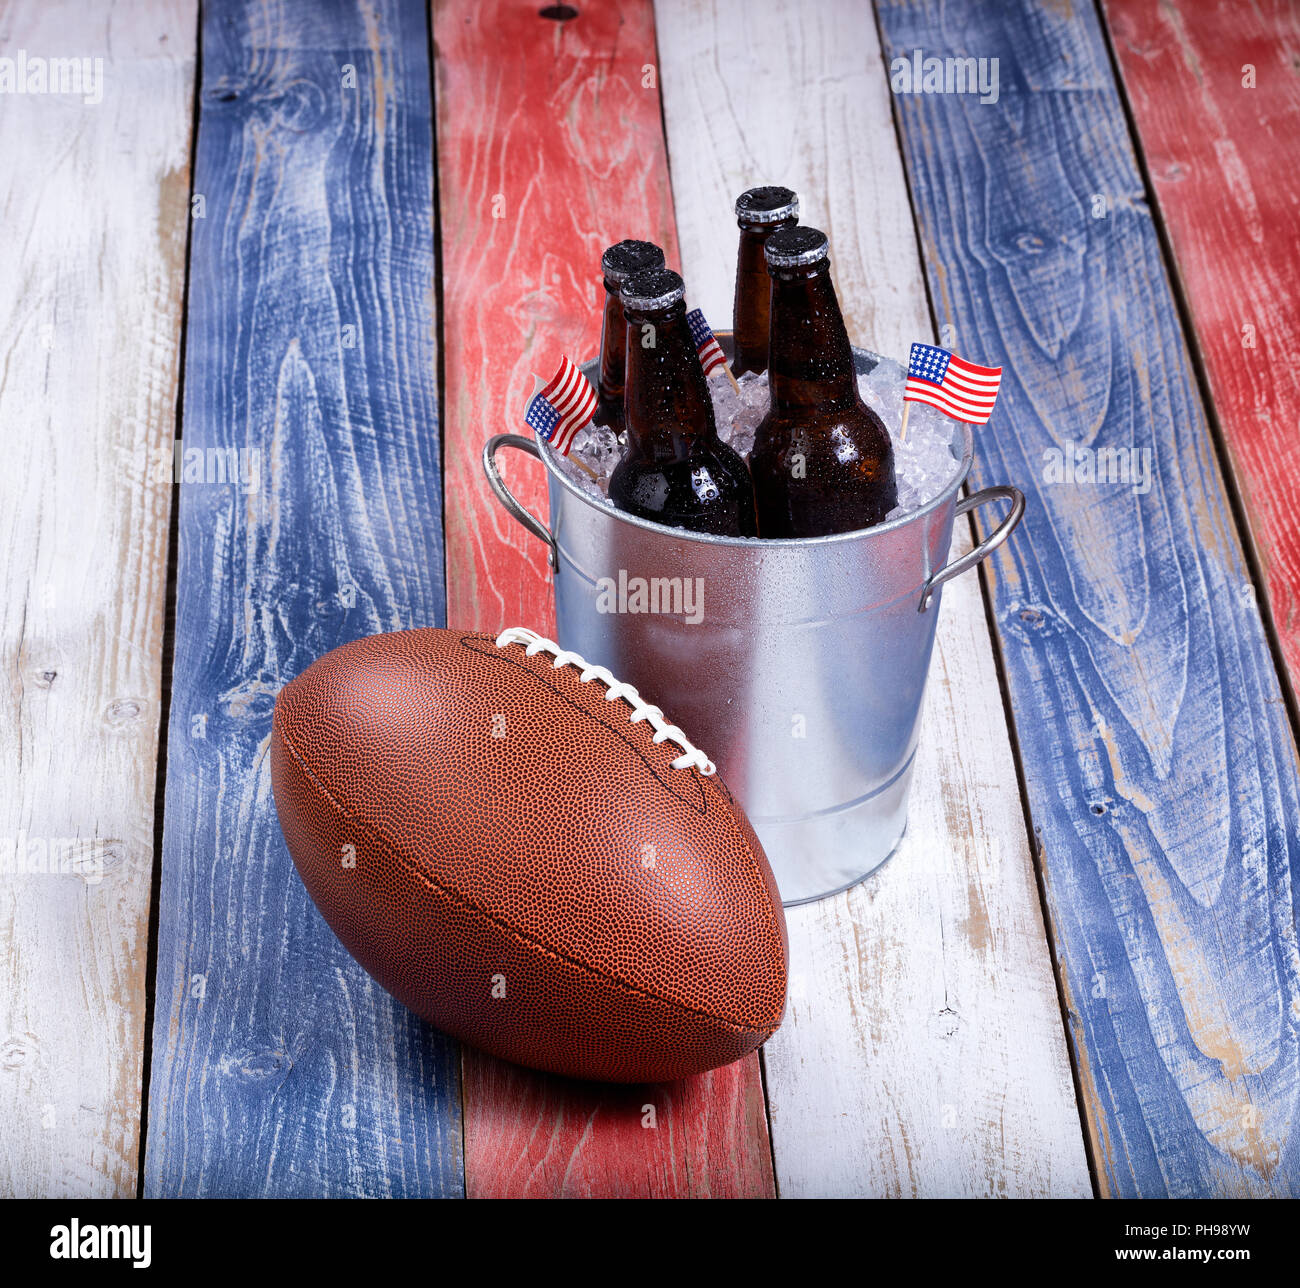 Football américain et bière glacée sur les planches de bois rustique Banque D'Images